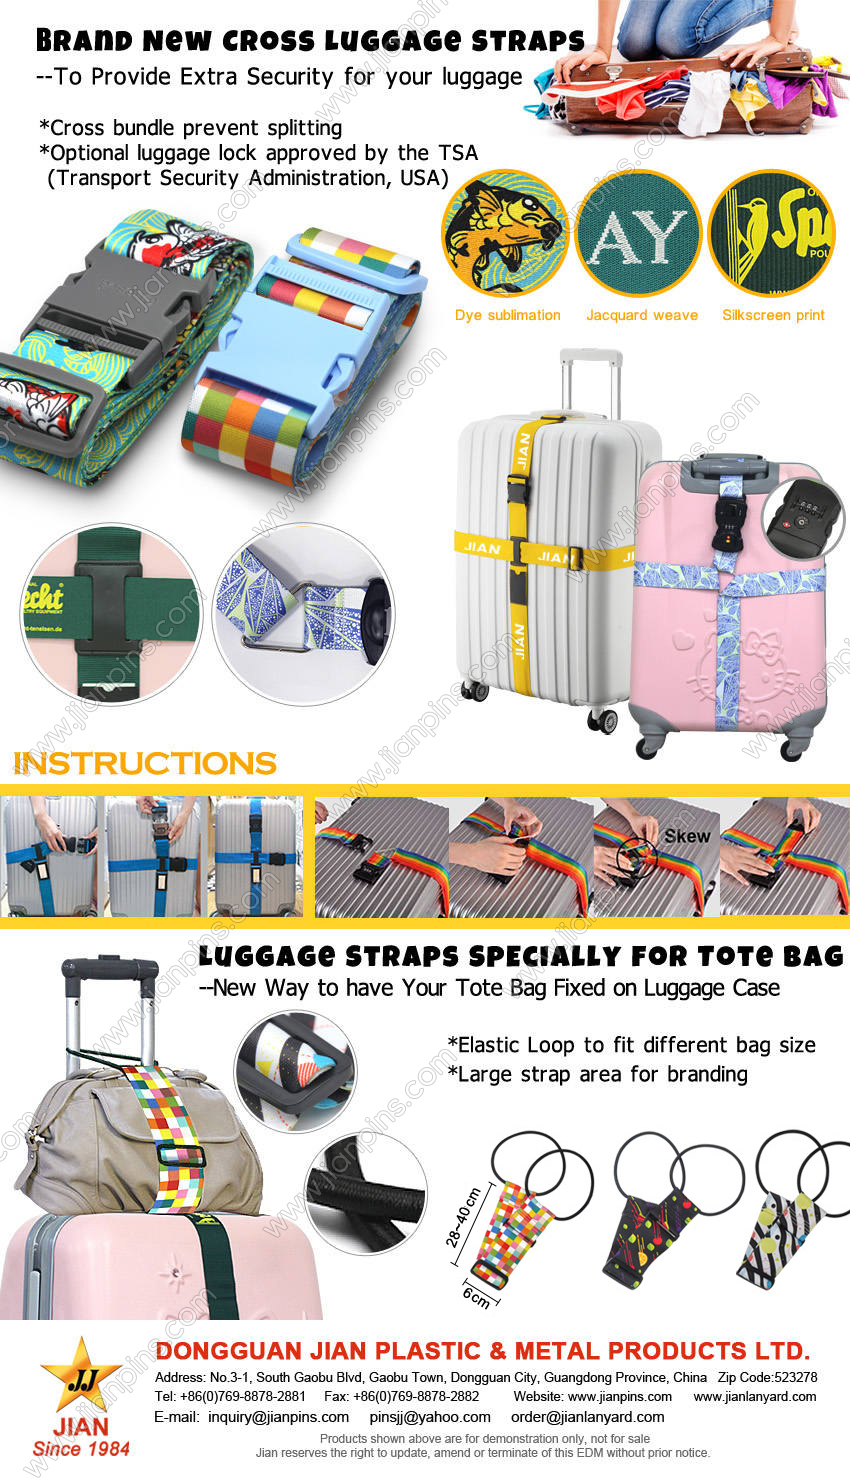 Brandneue Cross-Gepäckgurte bieten zusätzliche Sicherheit für Ihr Gepäck